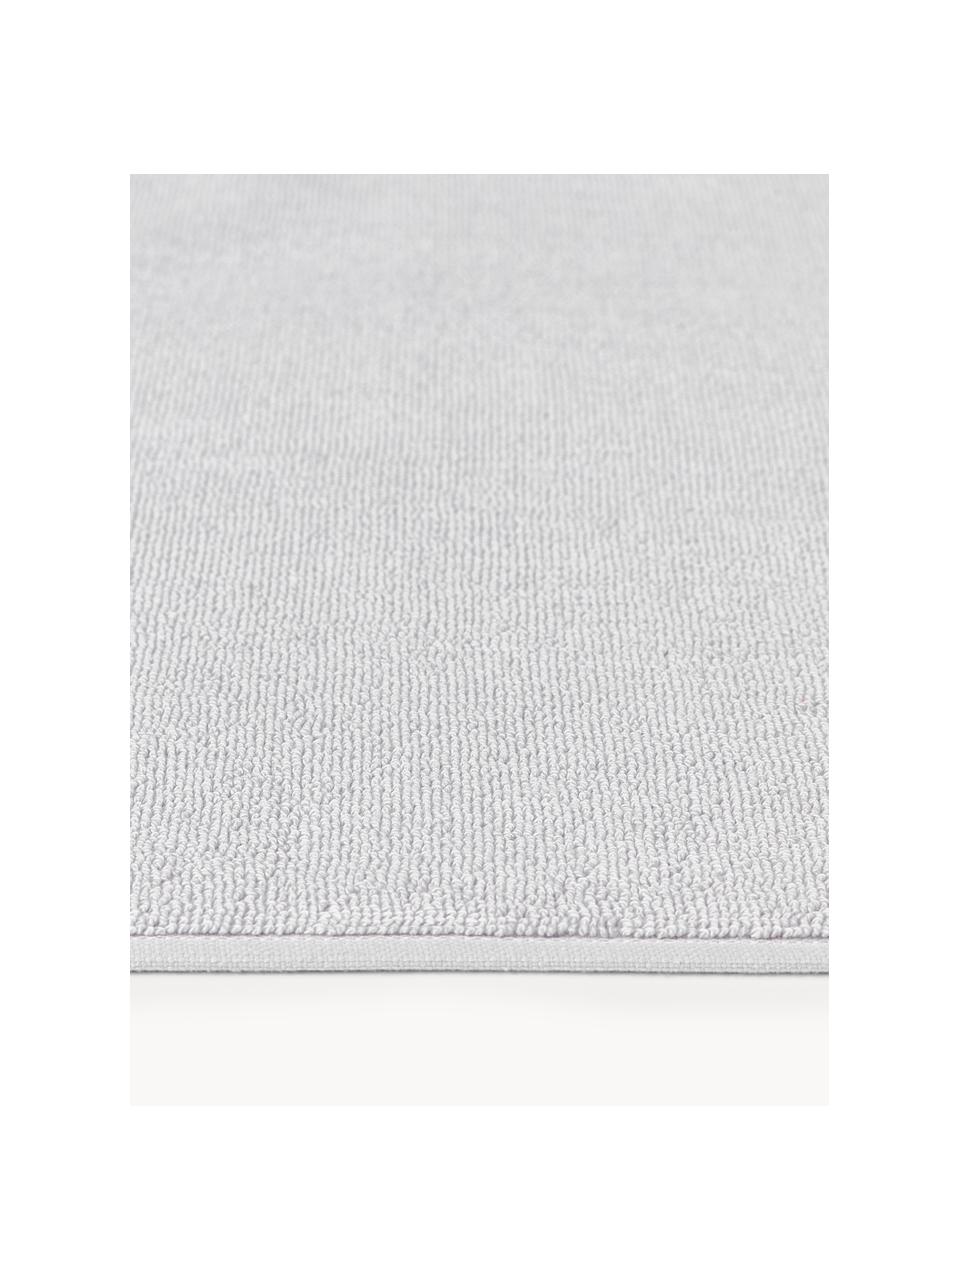 Dywanik łazienkowy z bawełny organicznej Premium, antypoślizgowy, Jasny szary, S 50 x D 70 cm